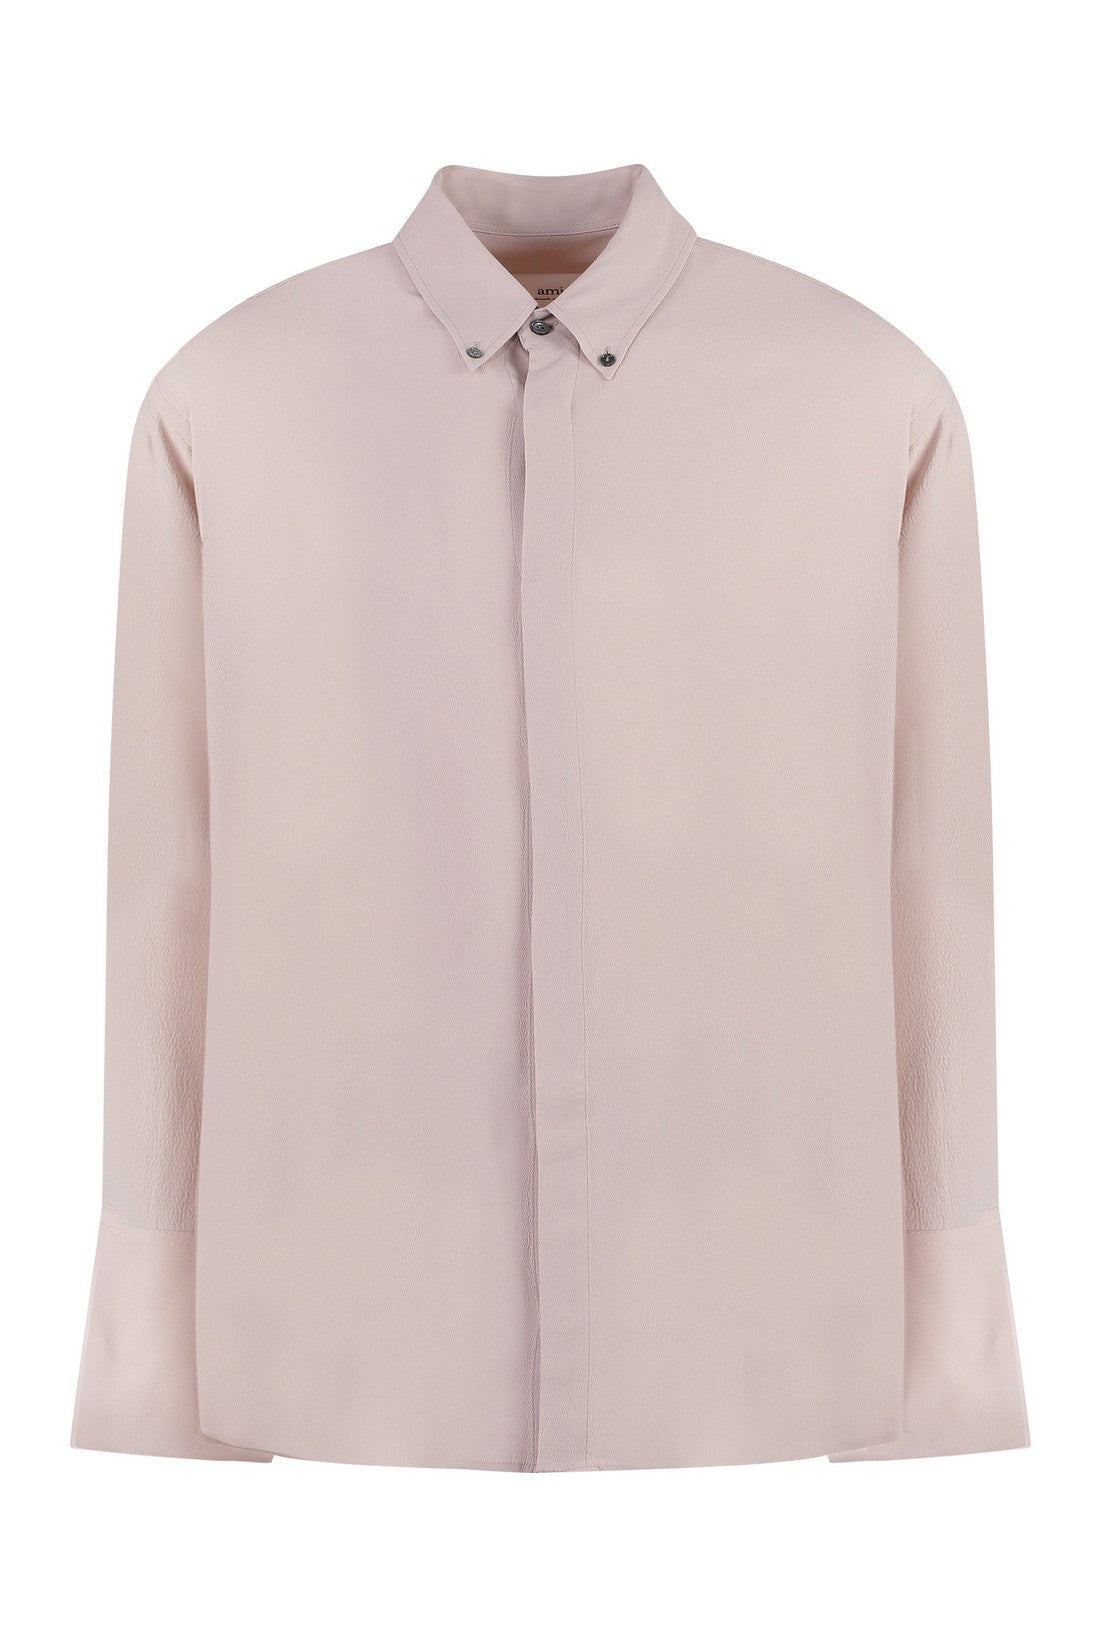 AMI PARIS-OUTLET-SALE-Silk blend shirt-ARCHIVIST